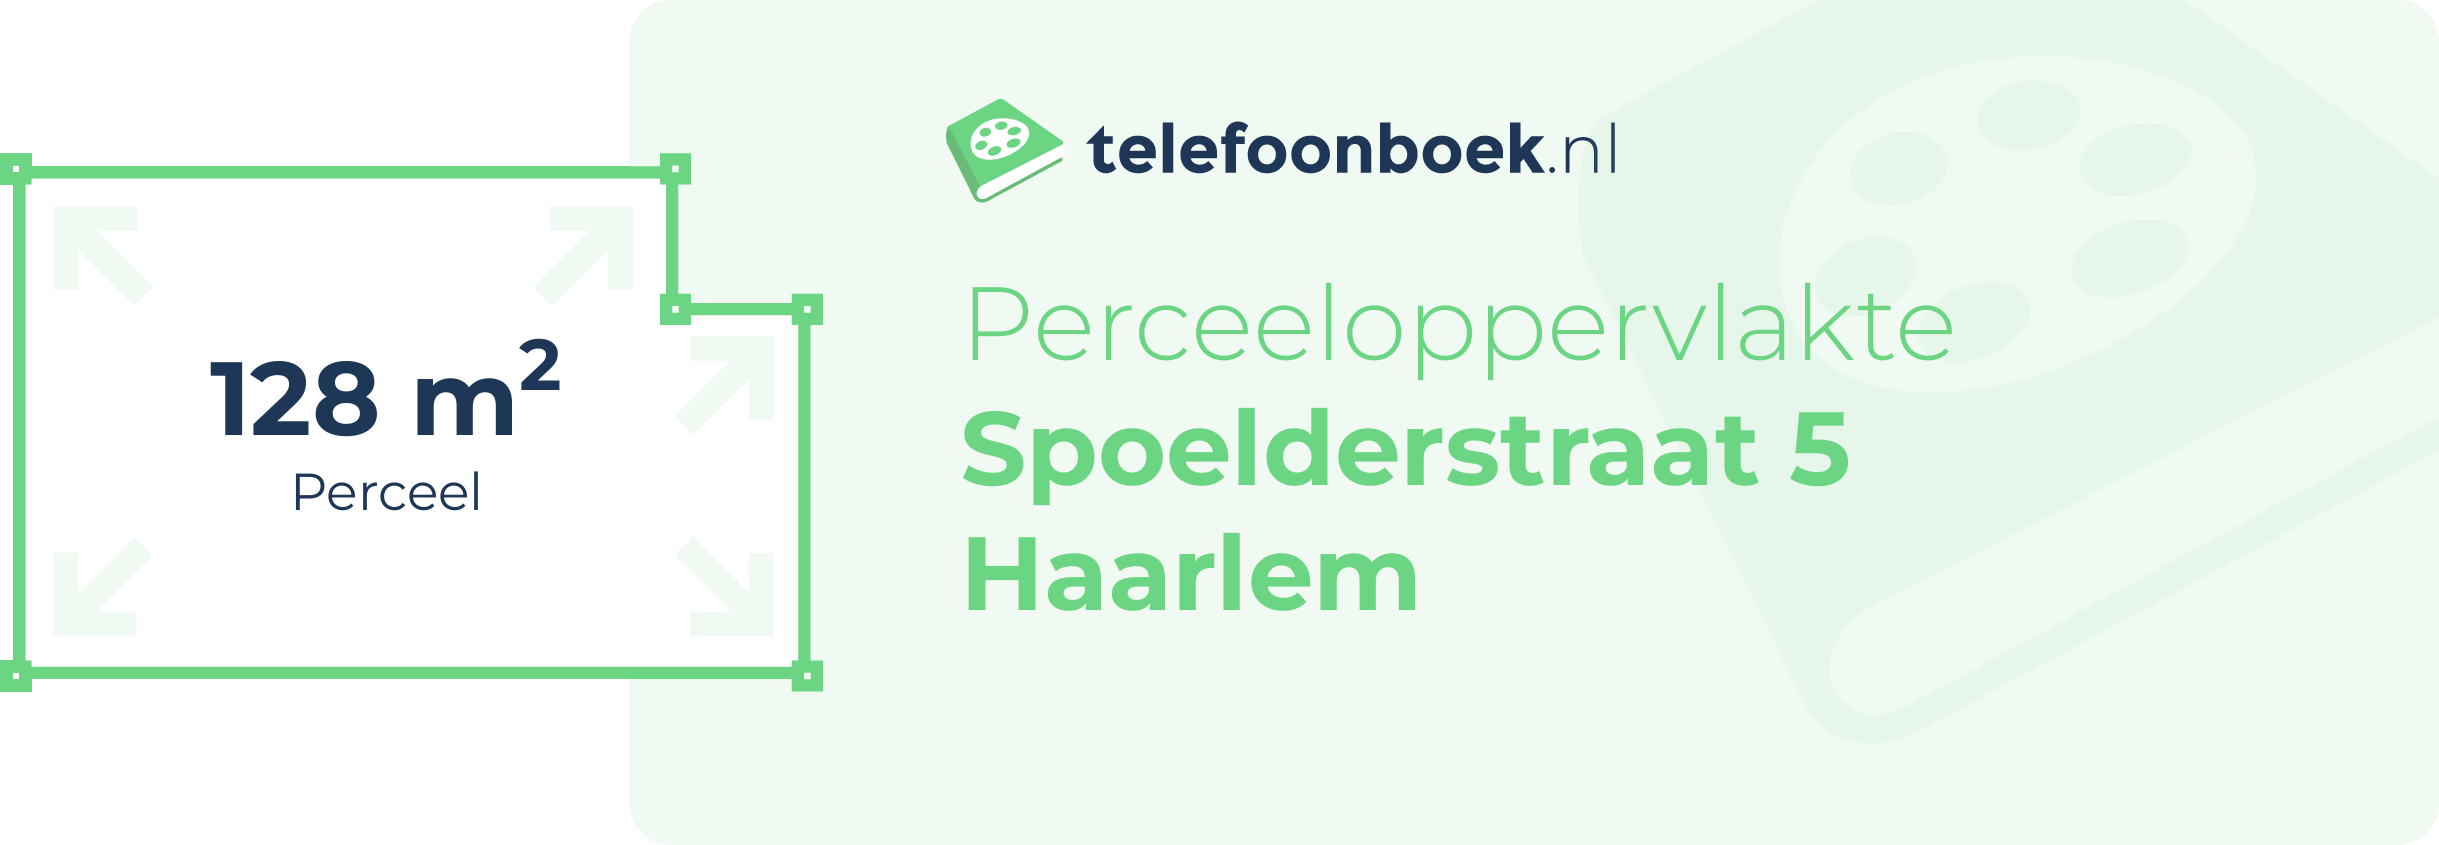 Perceeloppervlakte Spoelderstraat 5 Haarlem